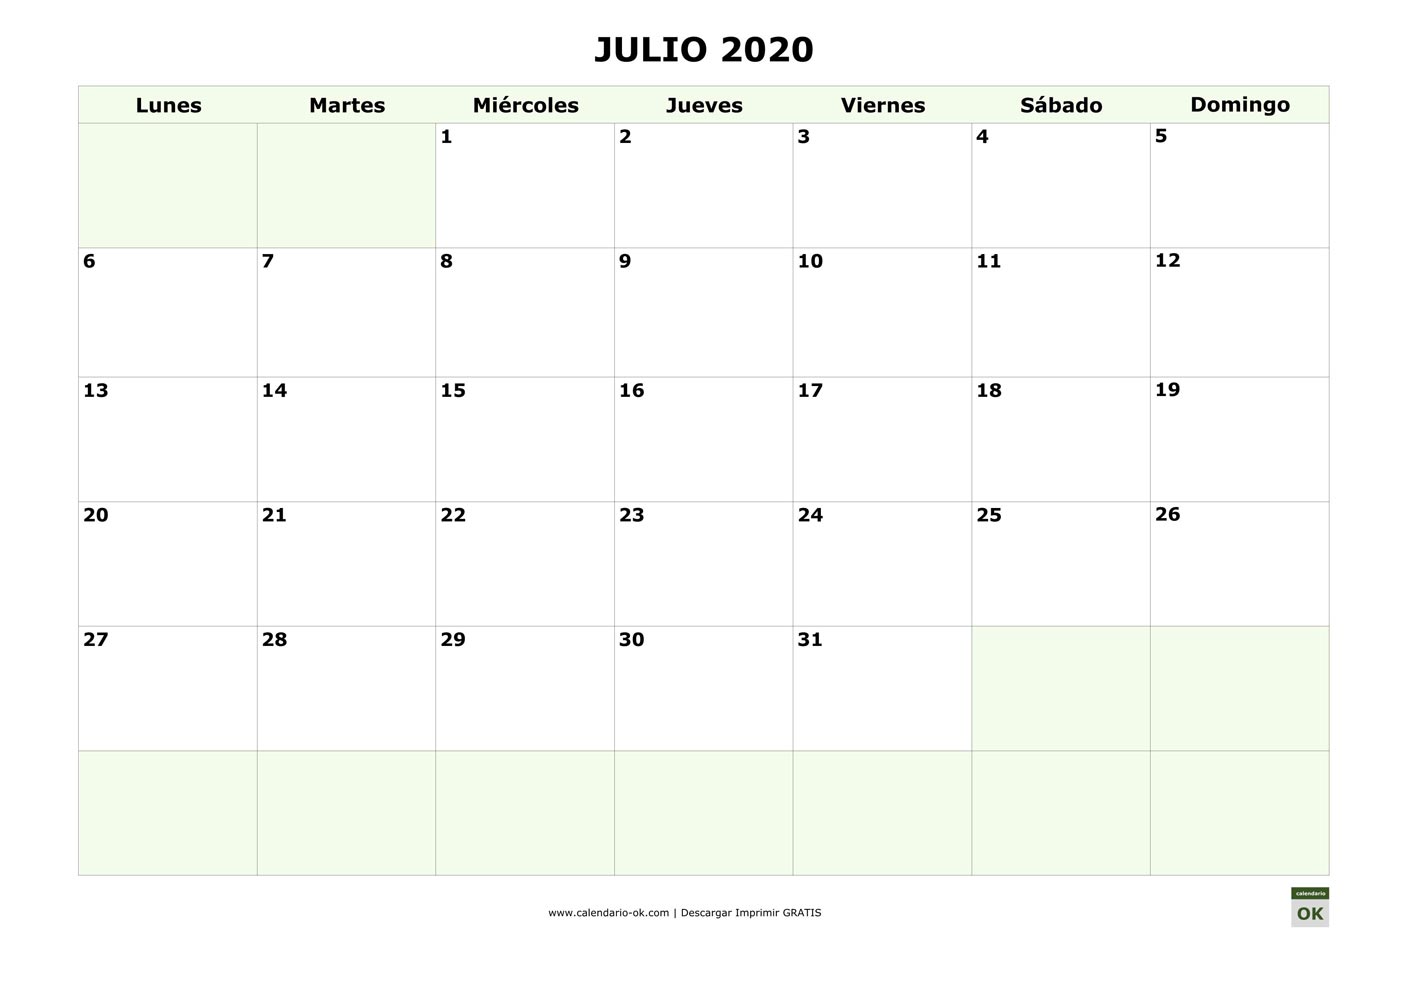 Julio 2020 para IMPRIMIR